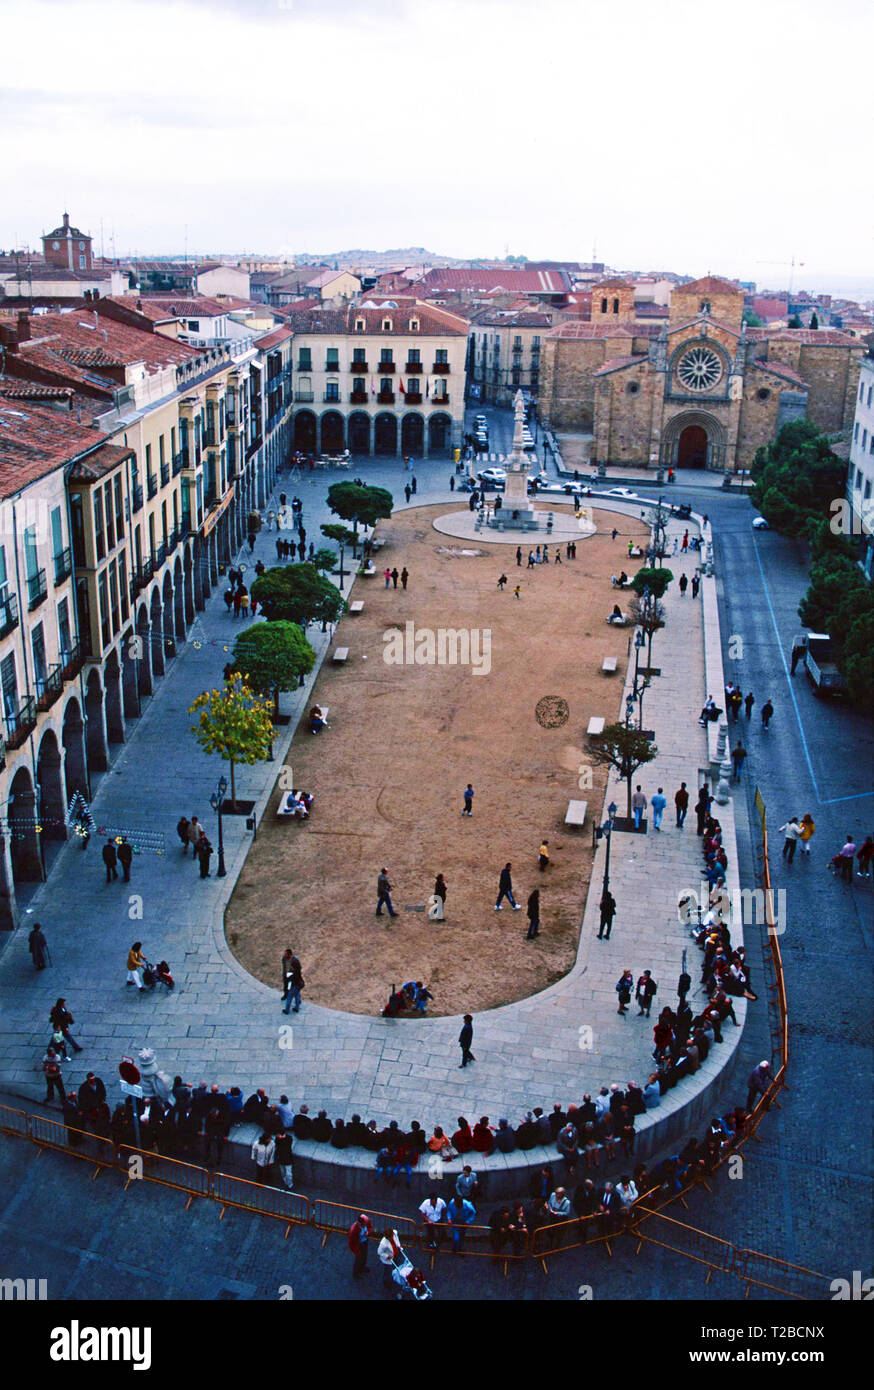 Plaza de Santa Teresa, Avila, Espagne Banque D'Images